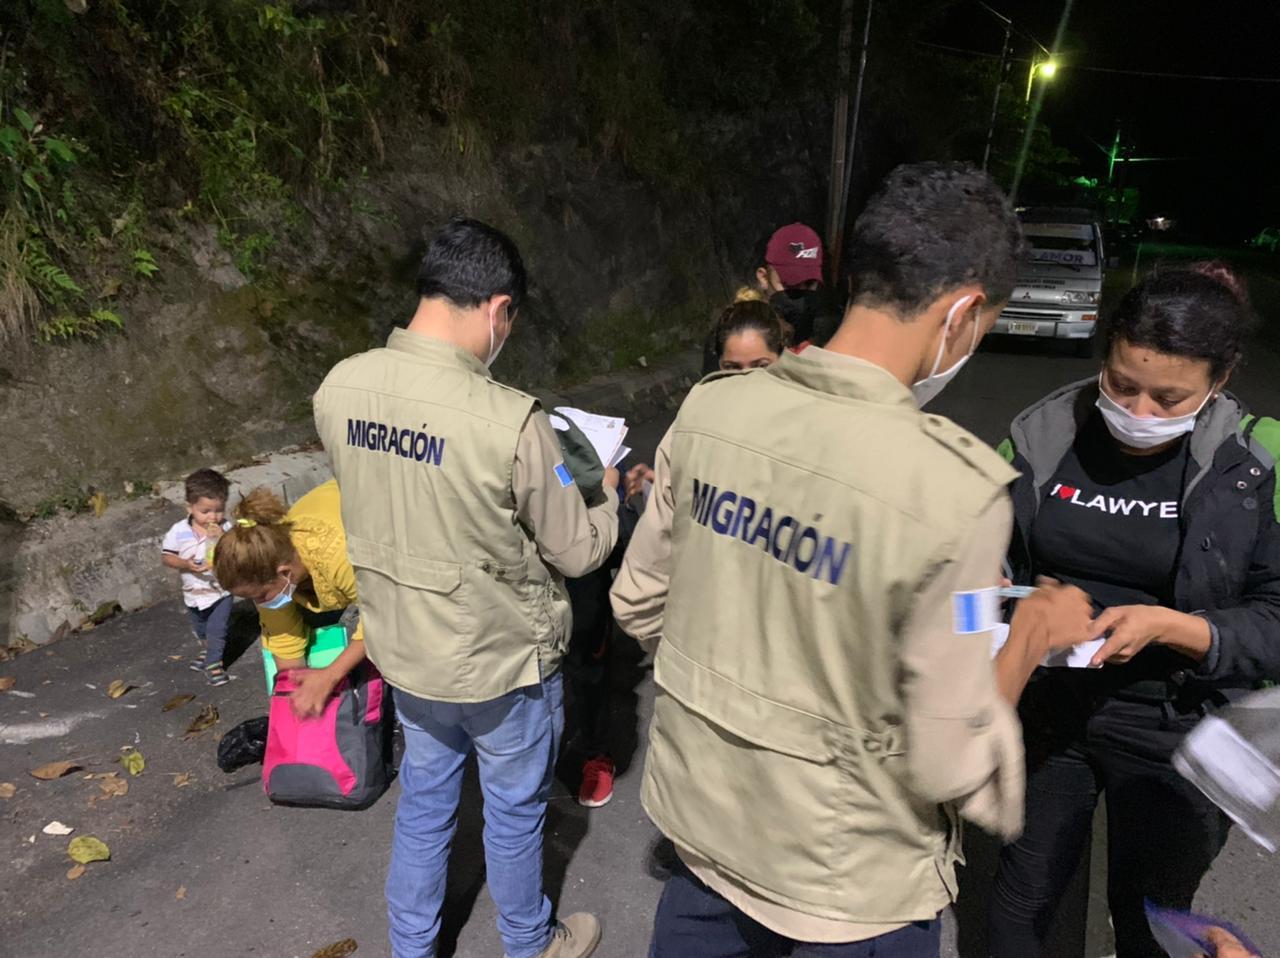 La migración en Guatemala